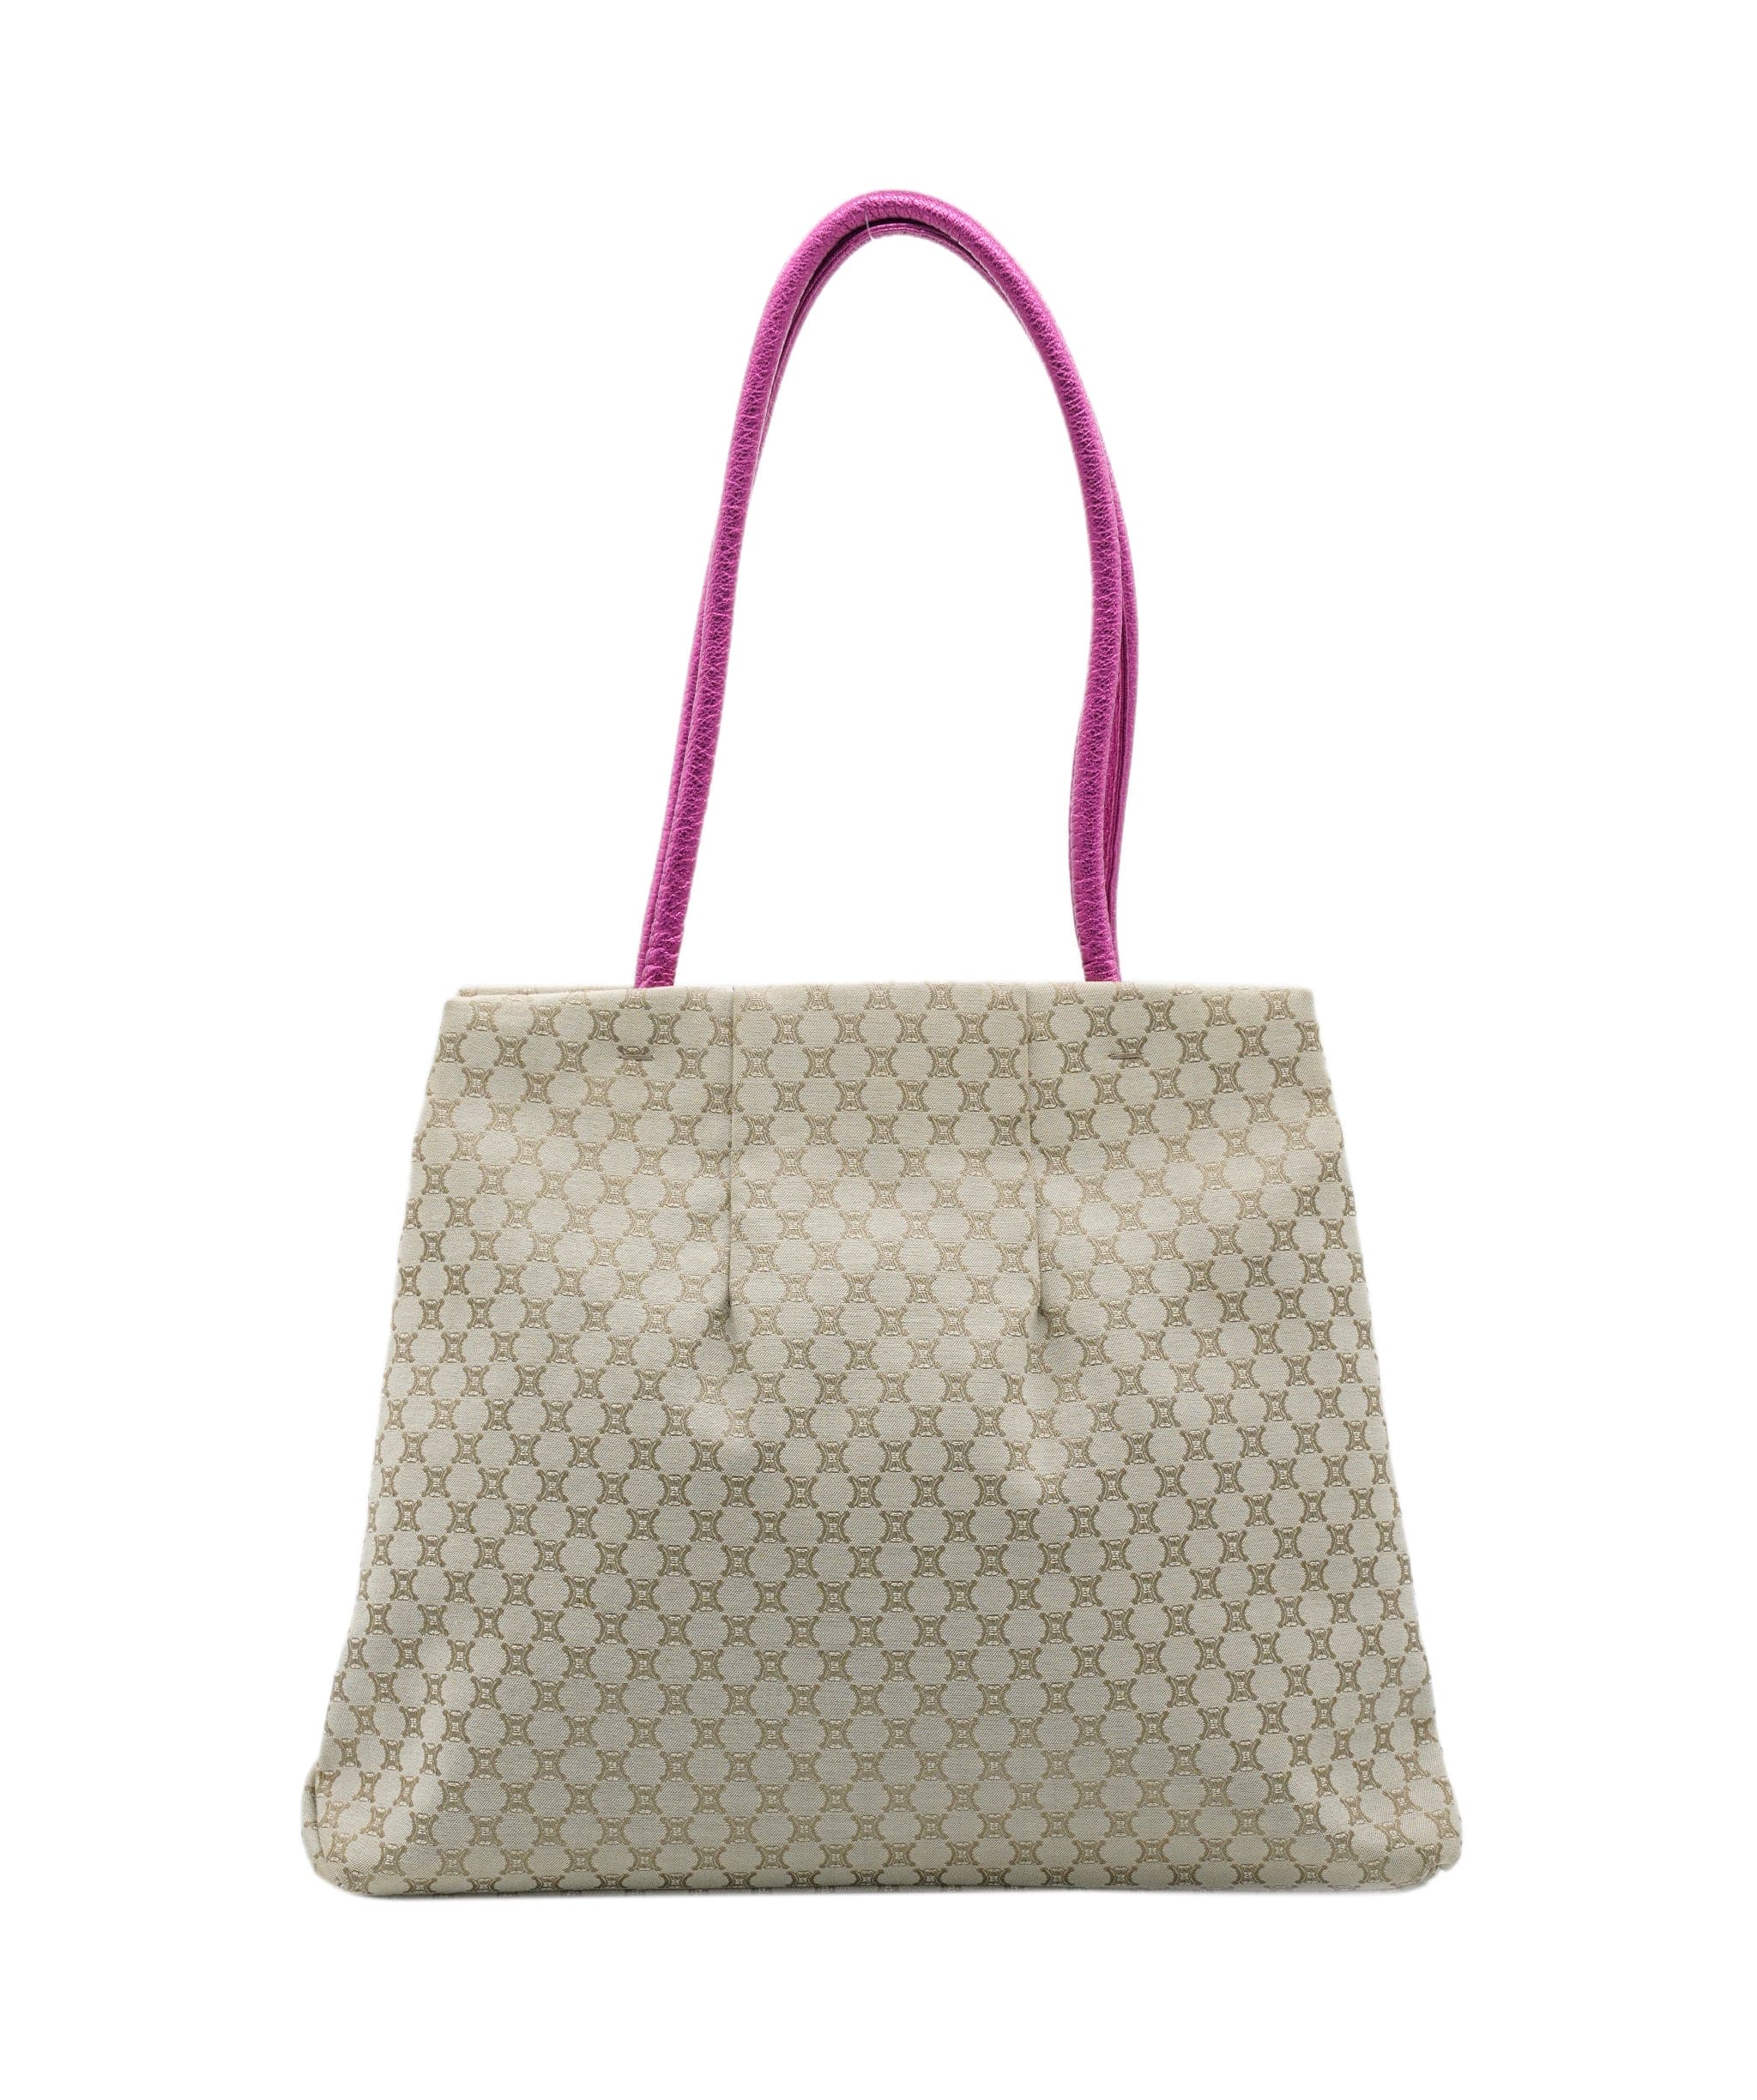 Celine Celine bag with pink handles ALL0285